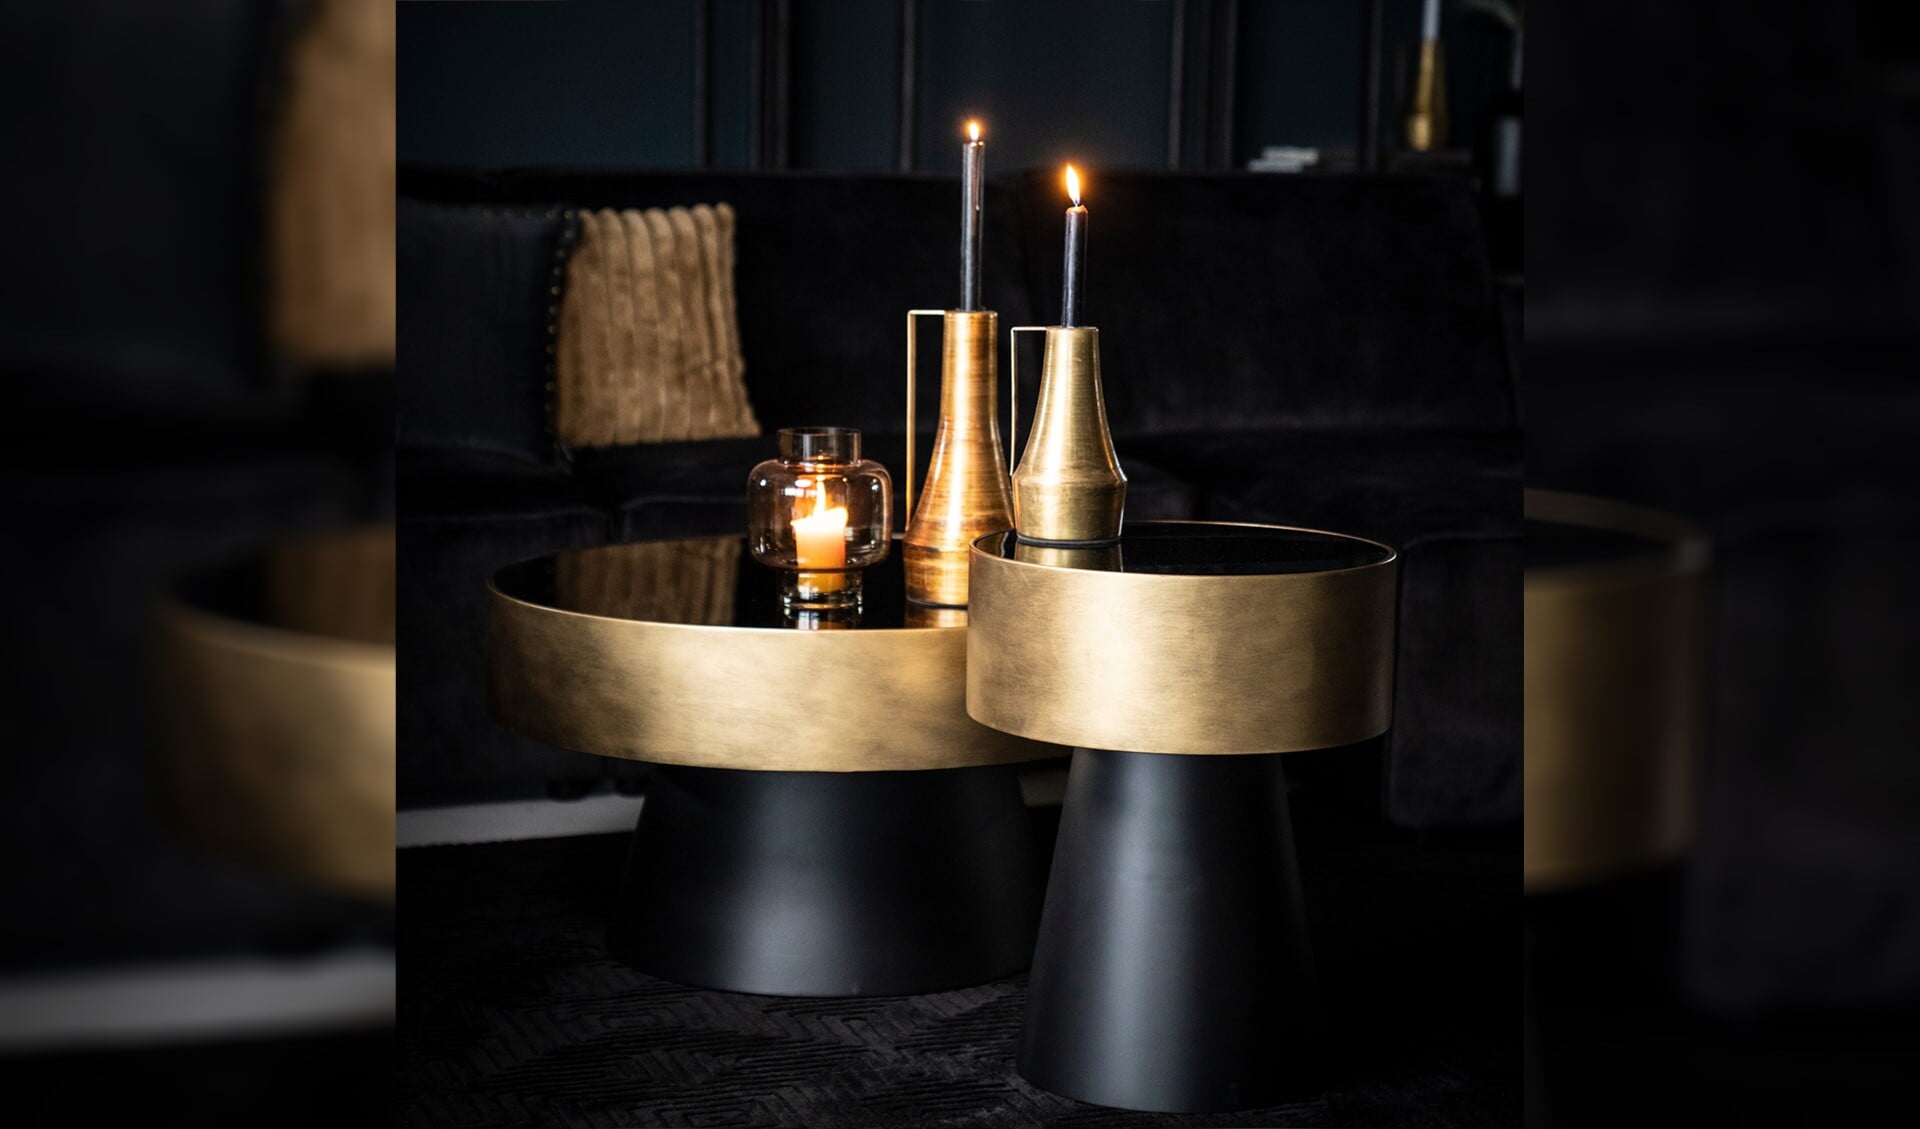 Zwart, goud en robuuste meubels passen goed bij de stijl Midnight moods.